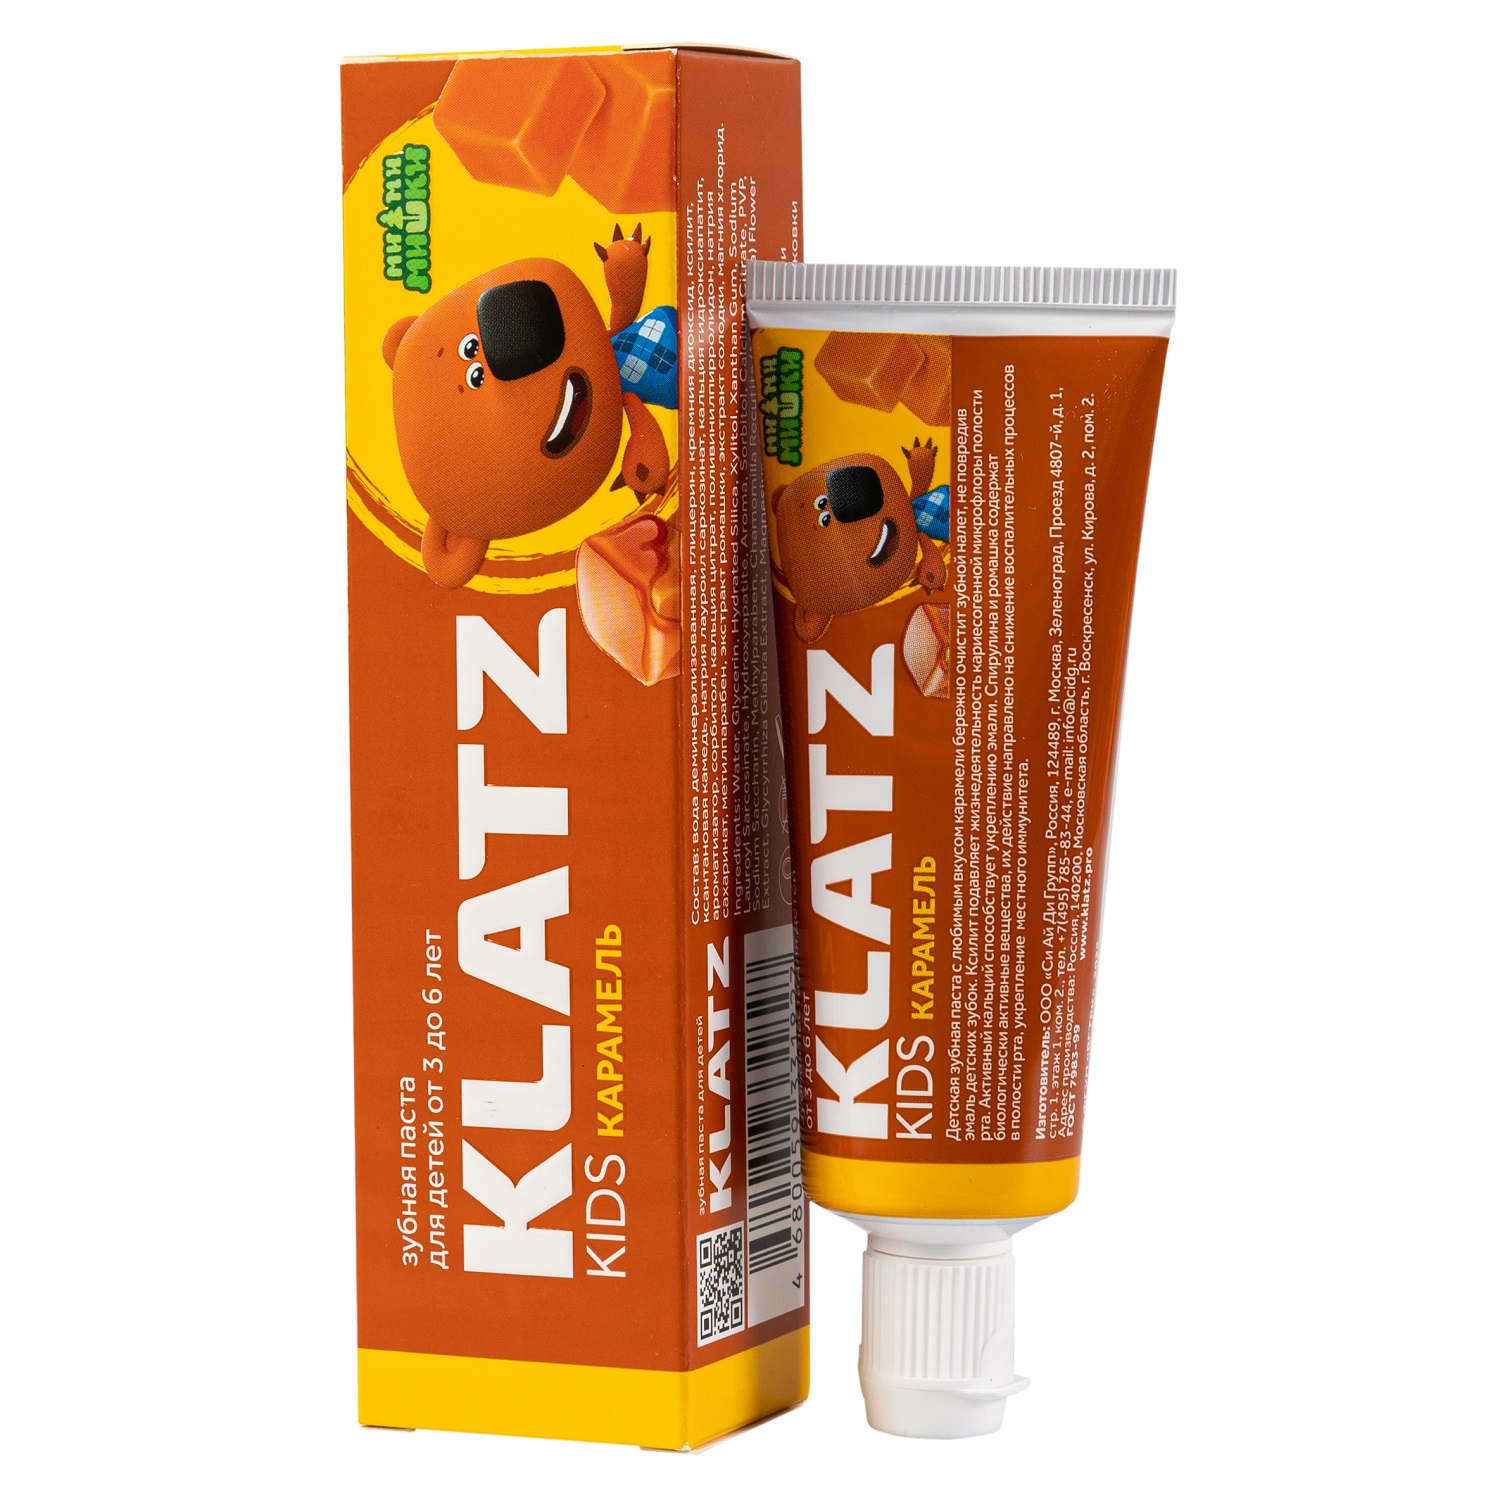 Klatz Детская зубная паста Карамель, 40 мл (Klatz, Ми-ми-мишки) klatz детская зубная паста бабл гам 40 мл klatz ми ми мишки